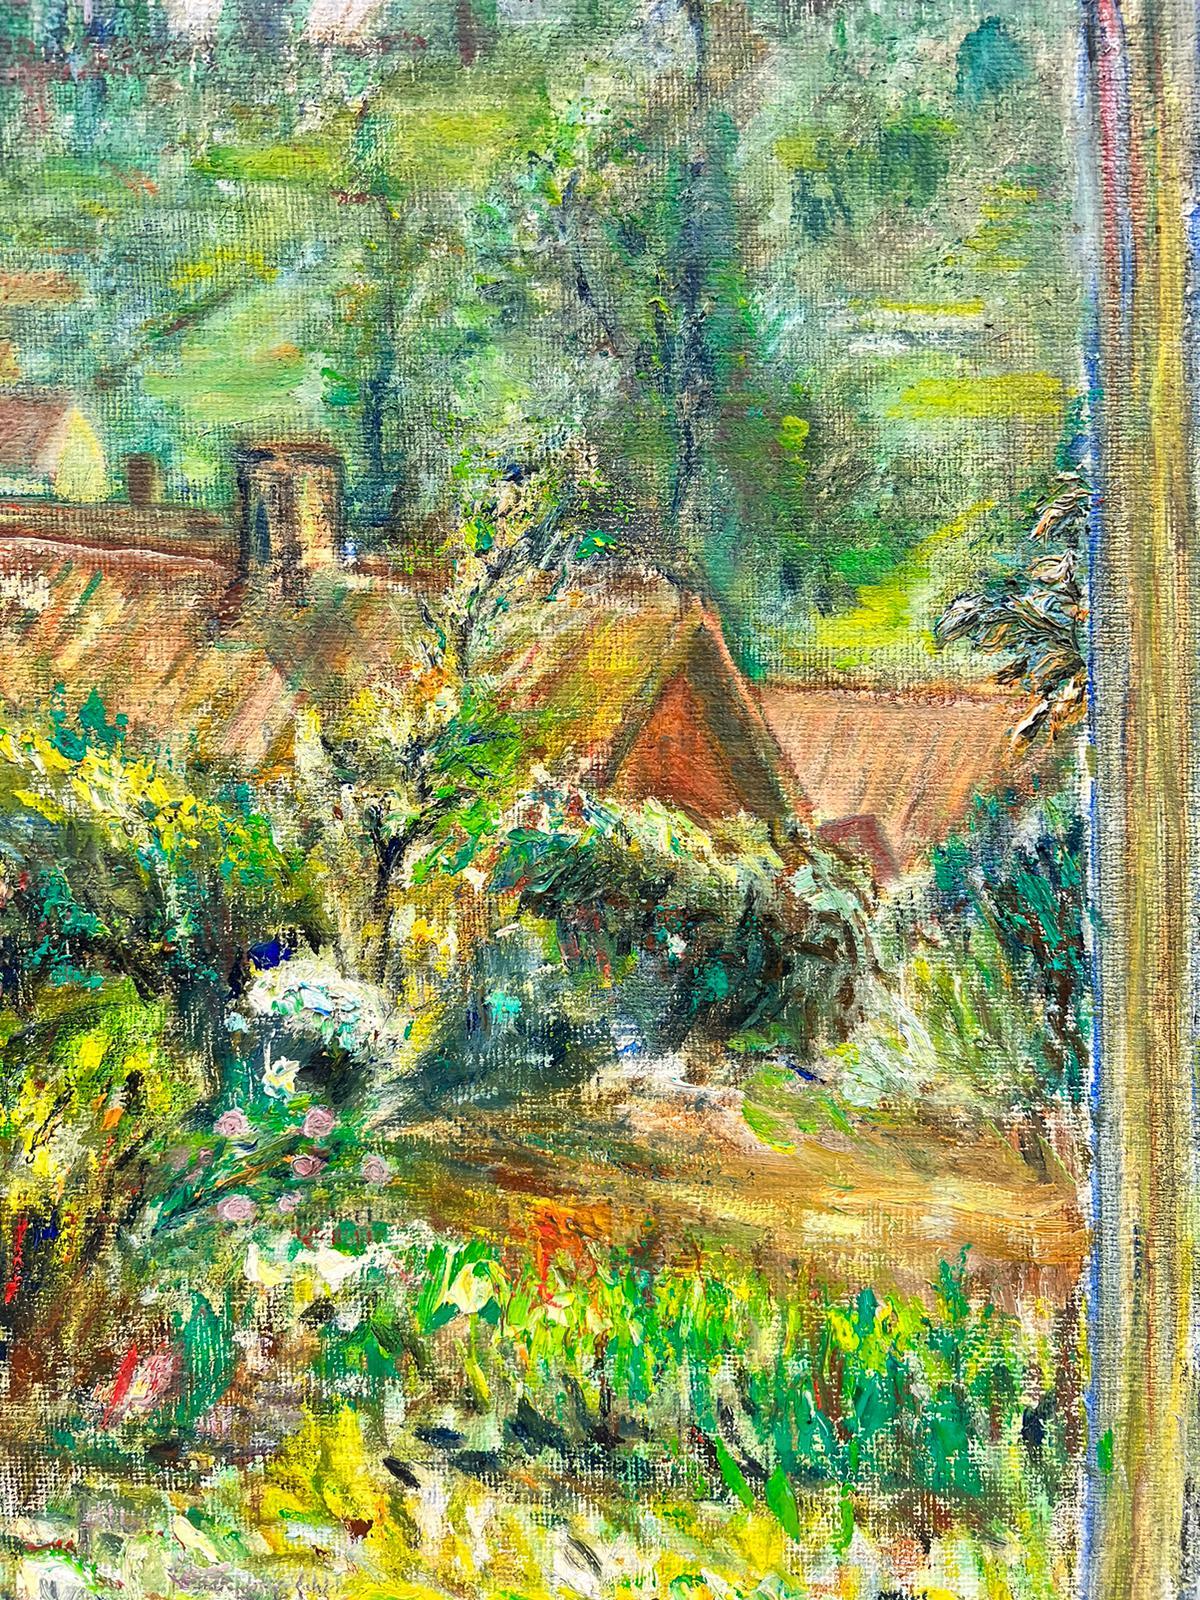 Tableau impressionniste français rêveur d'une fenêtre sur un paysage de jardin vert - Painting de 1900's French Impressionist